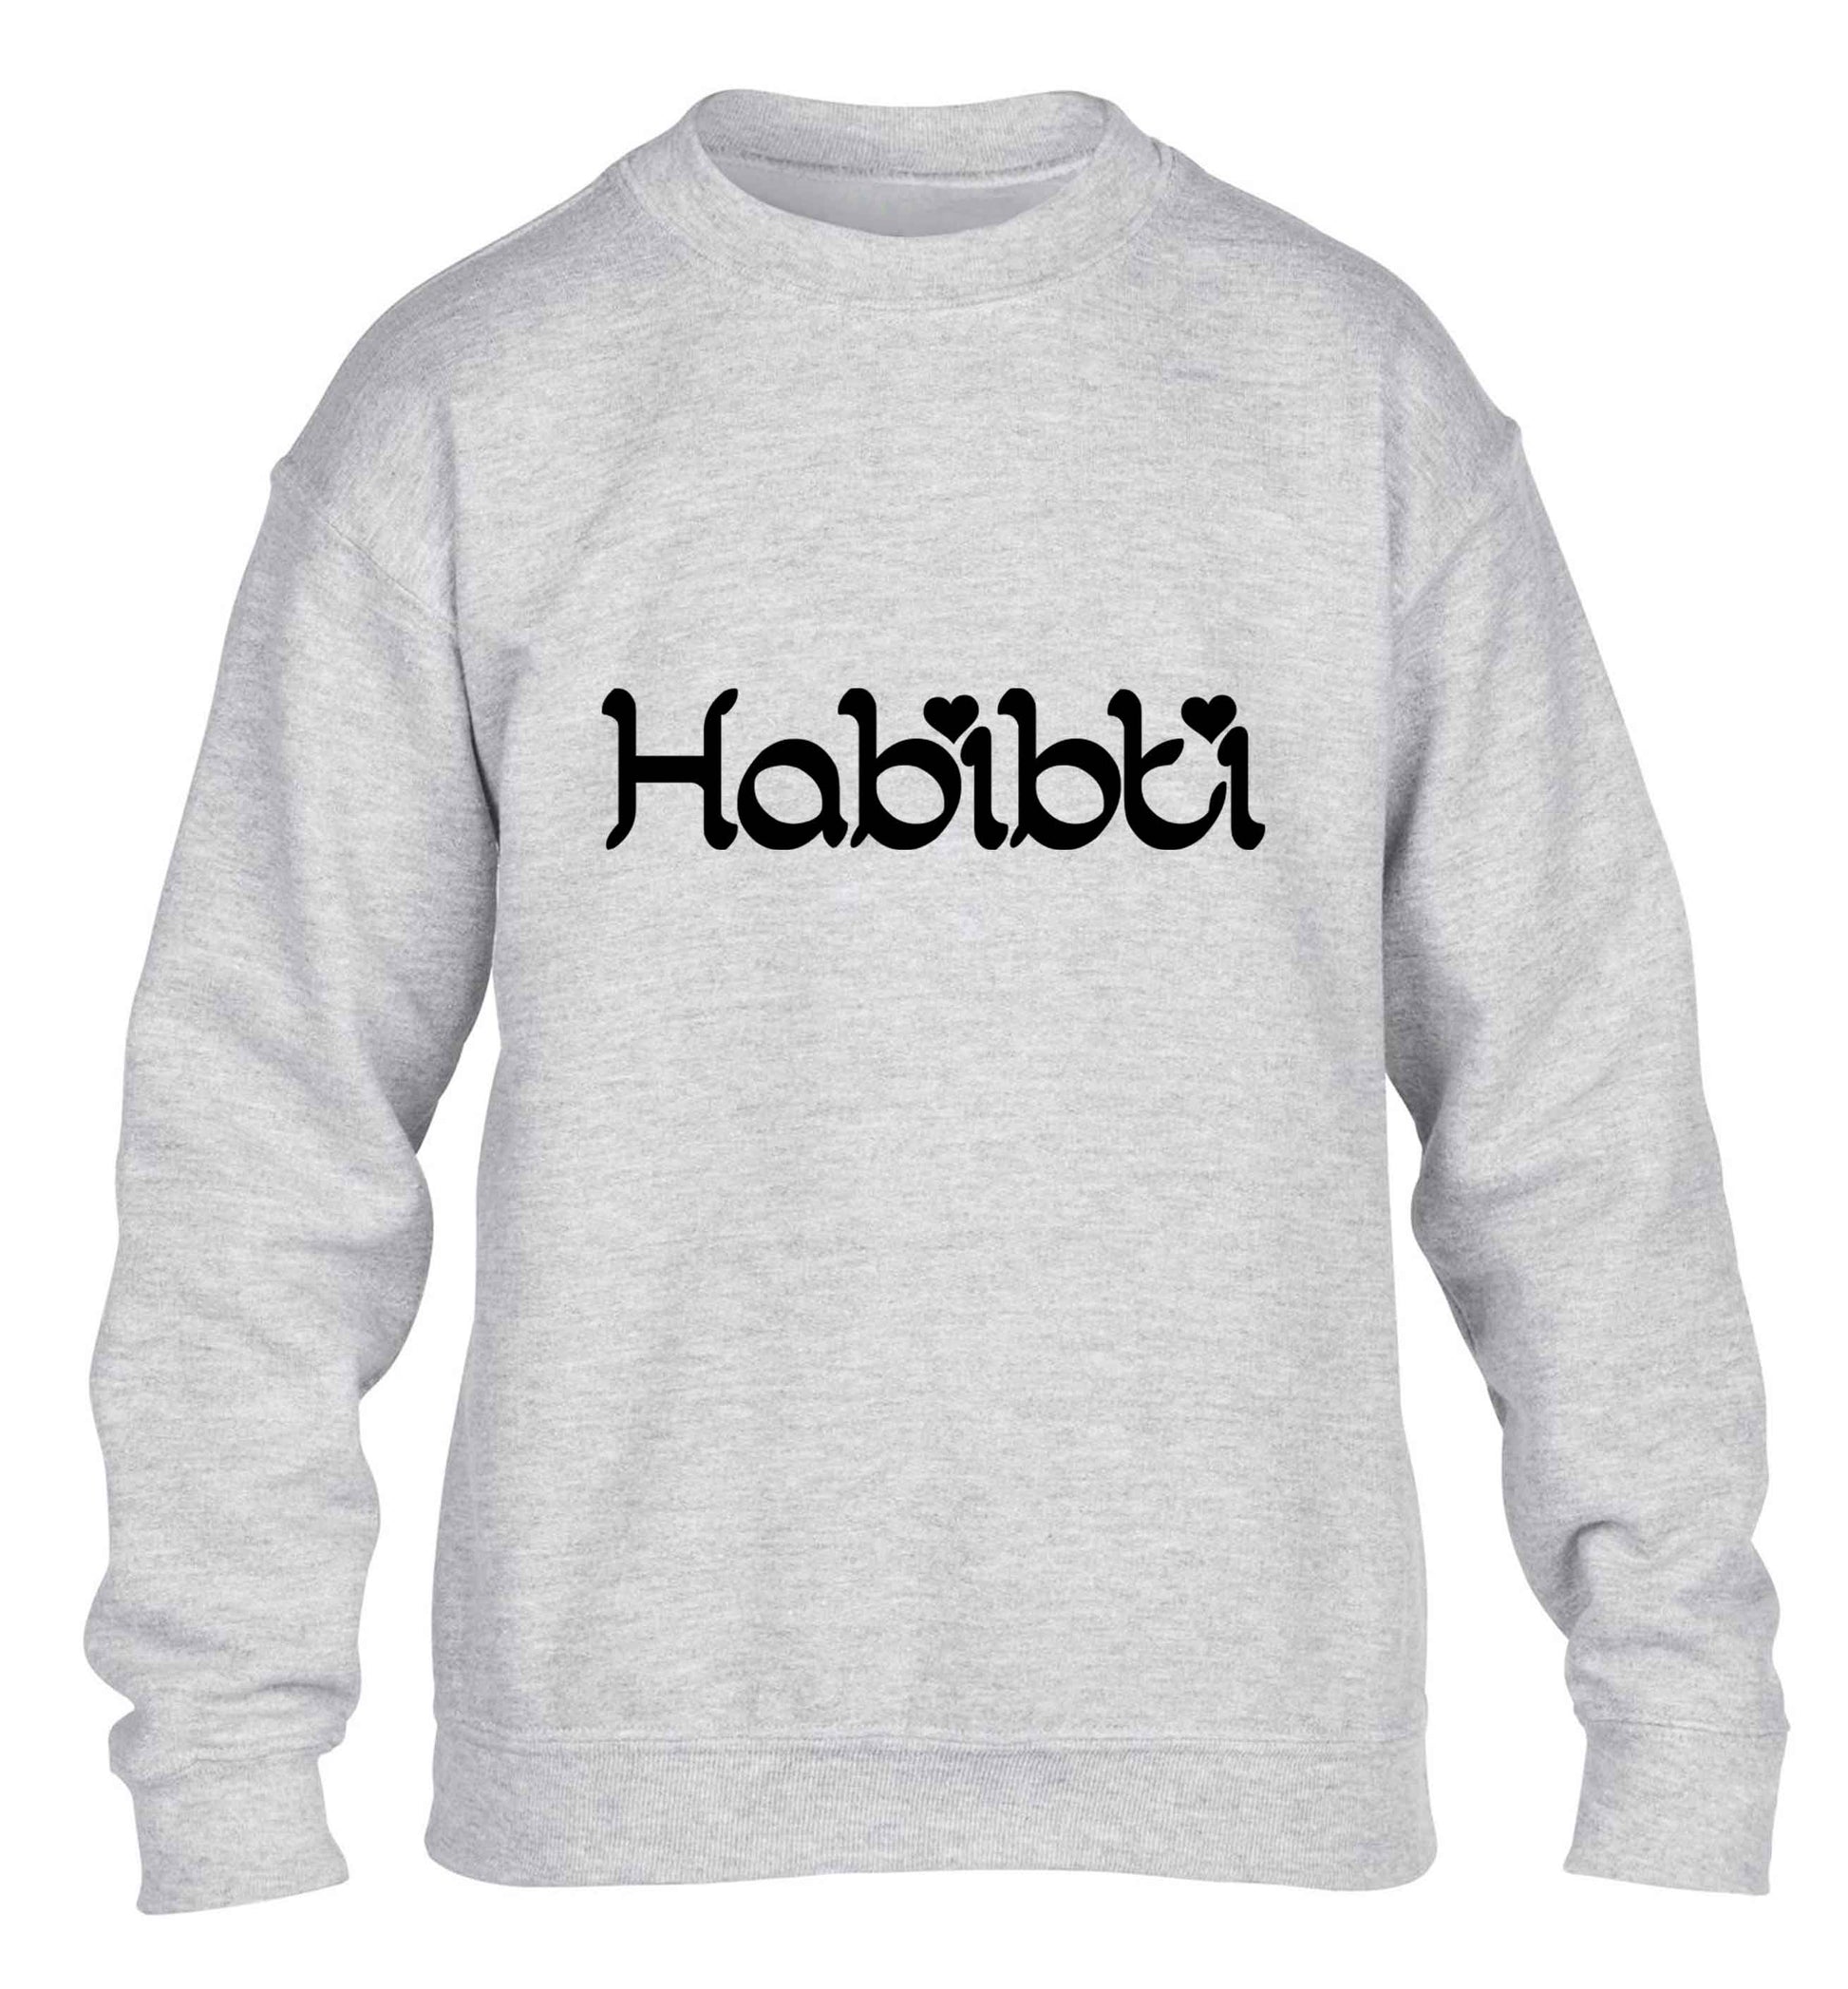 Habibiti children's grey sweater 12-13 Years